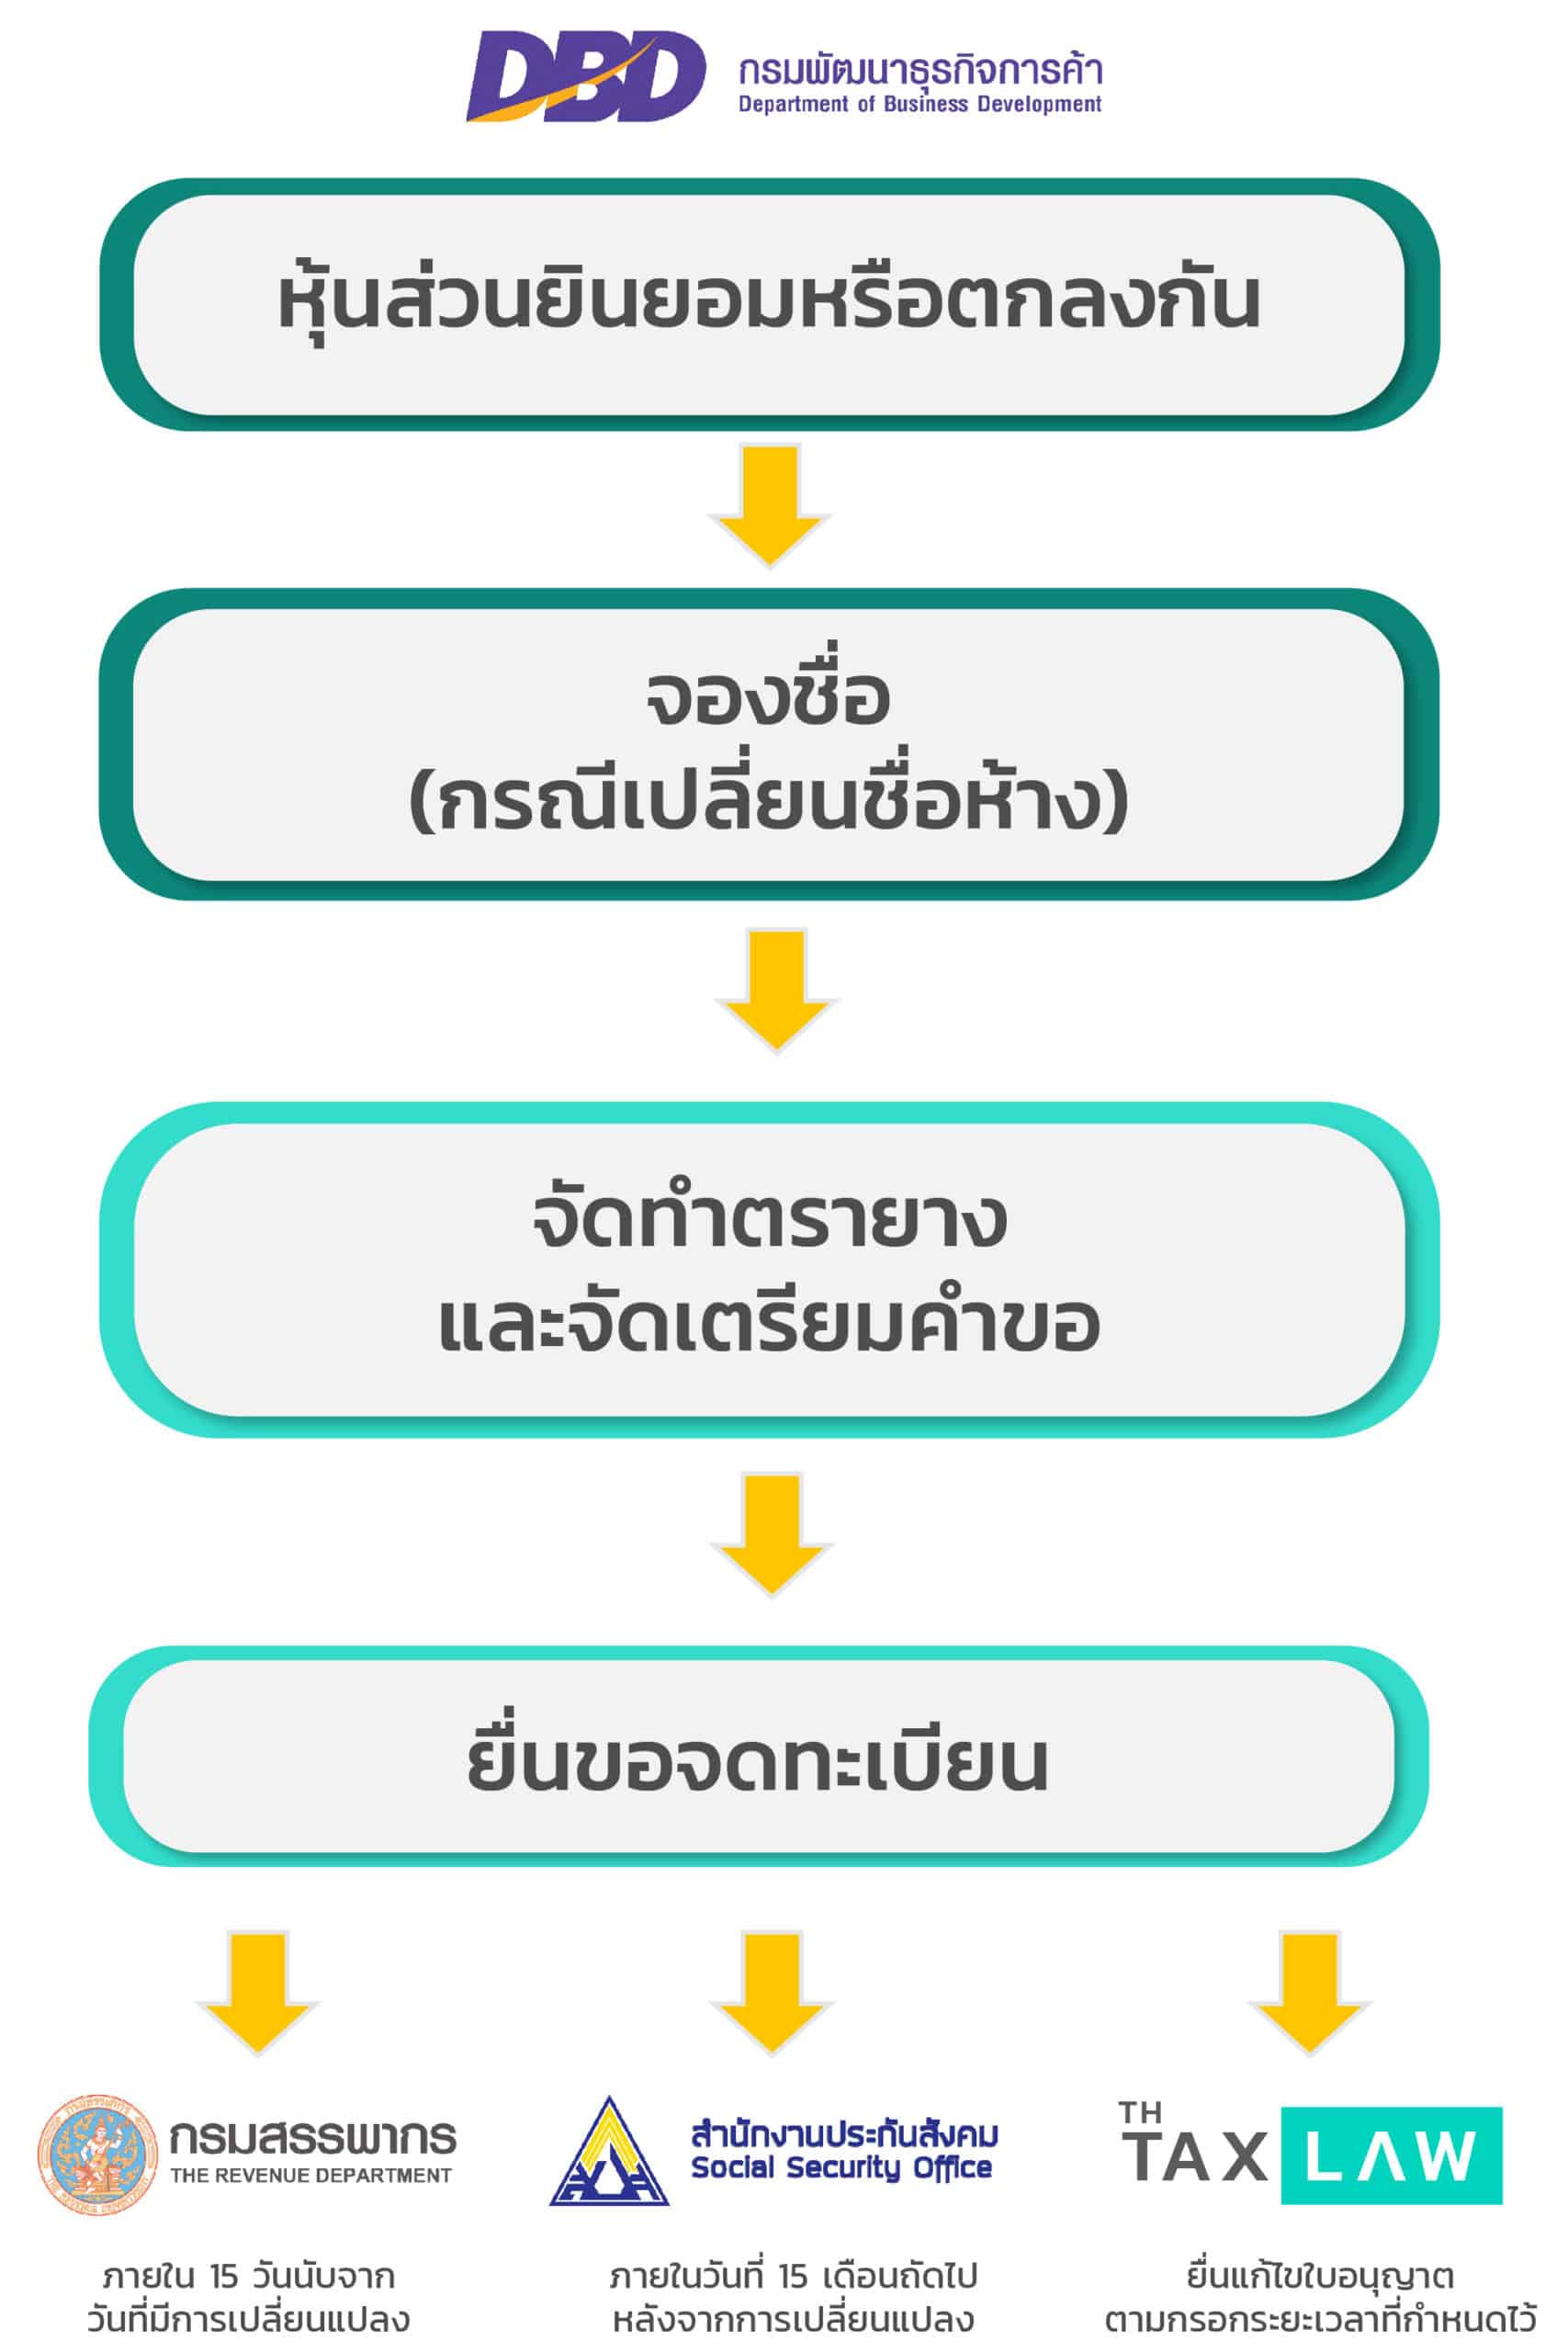 เปลี่ยนชื่อห้างหุ้นส่วนจำกัด-แก้ไขตราประทับ-ห้างหุ้นส่วนจำกัด | Best  Promotion สำหรับ 10 คนแรกของเดือน | Thai Tax Law